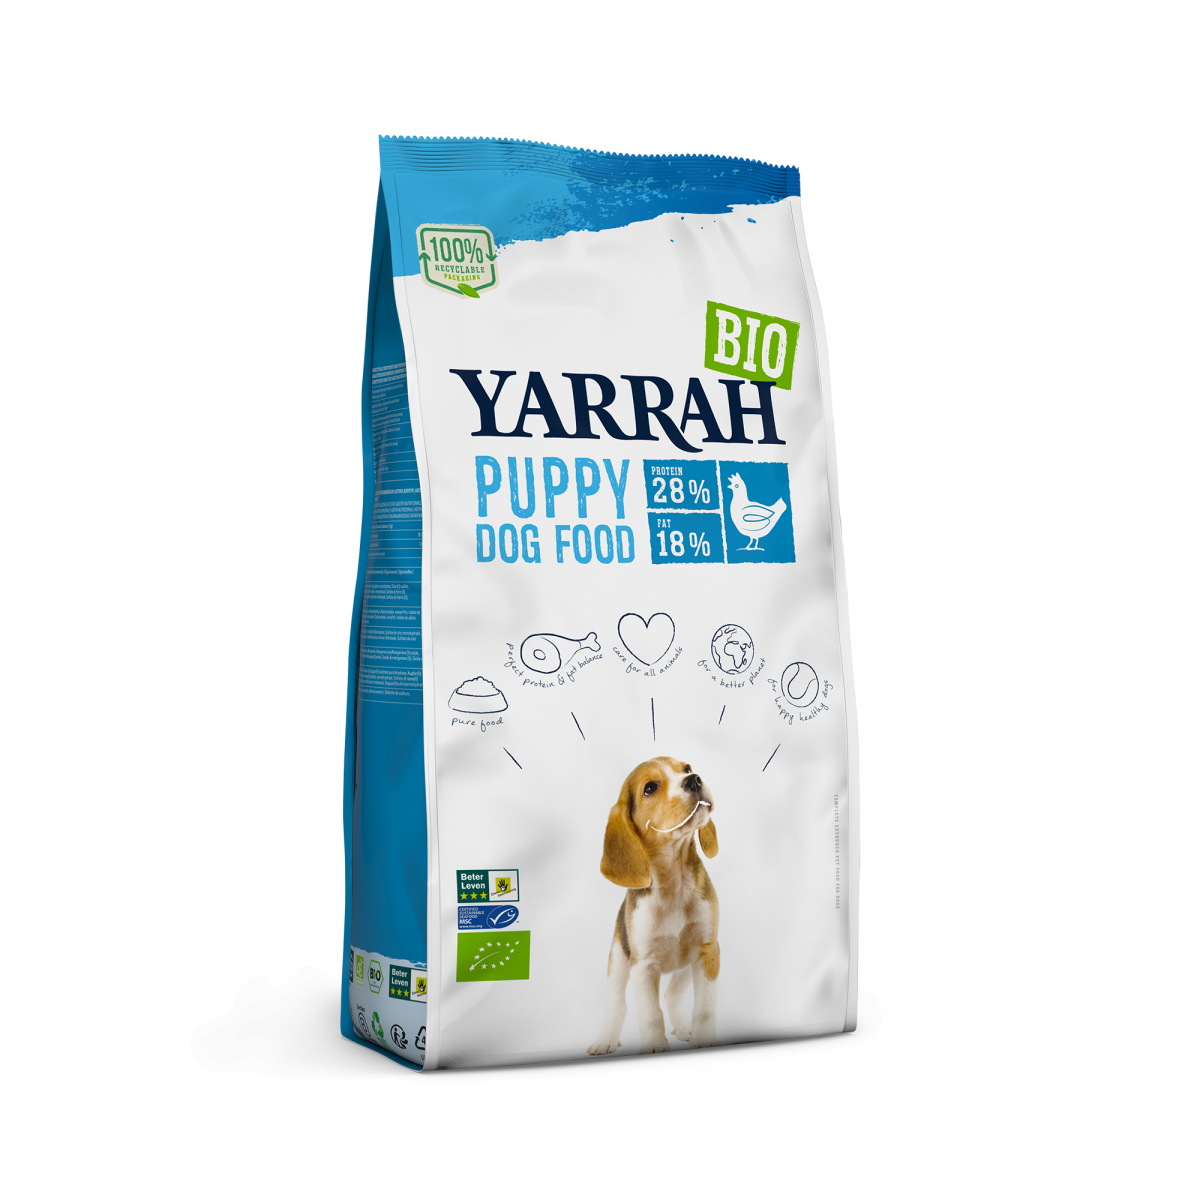 YARRAH Biologisch voer met kip voor puppy's